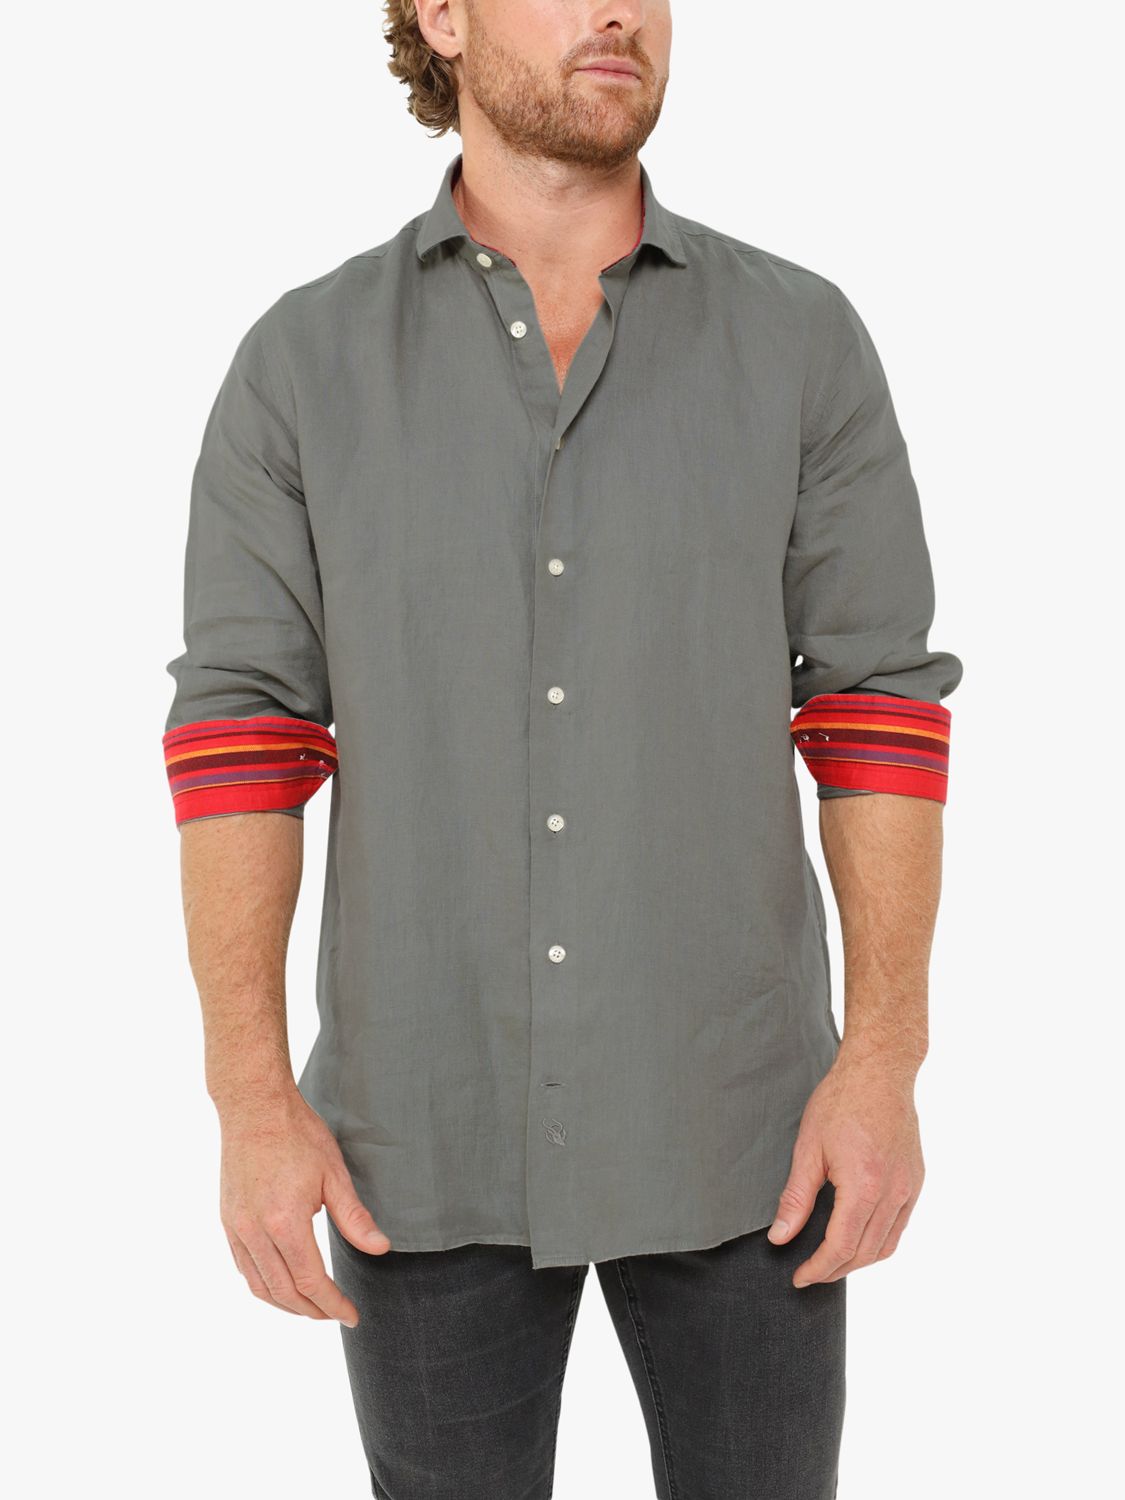 KOY Linen Shirt, Khaki/Olive, XS